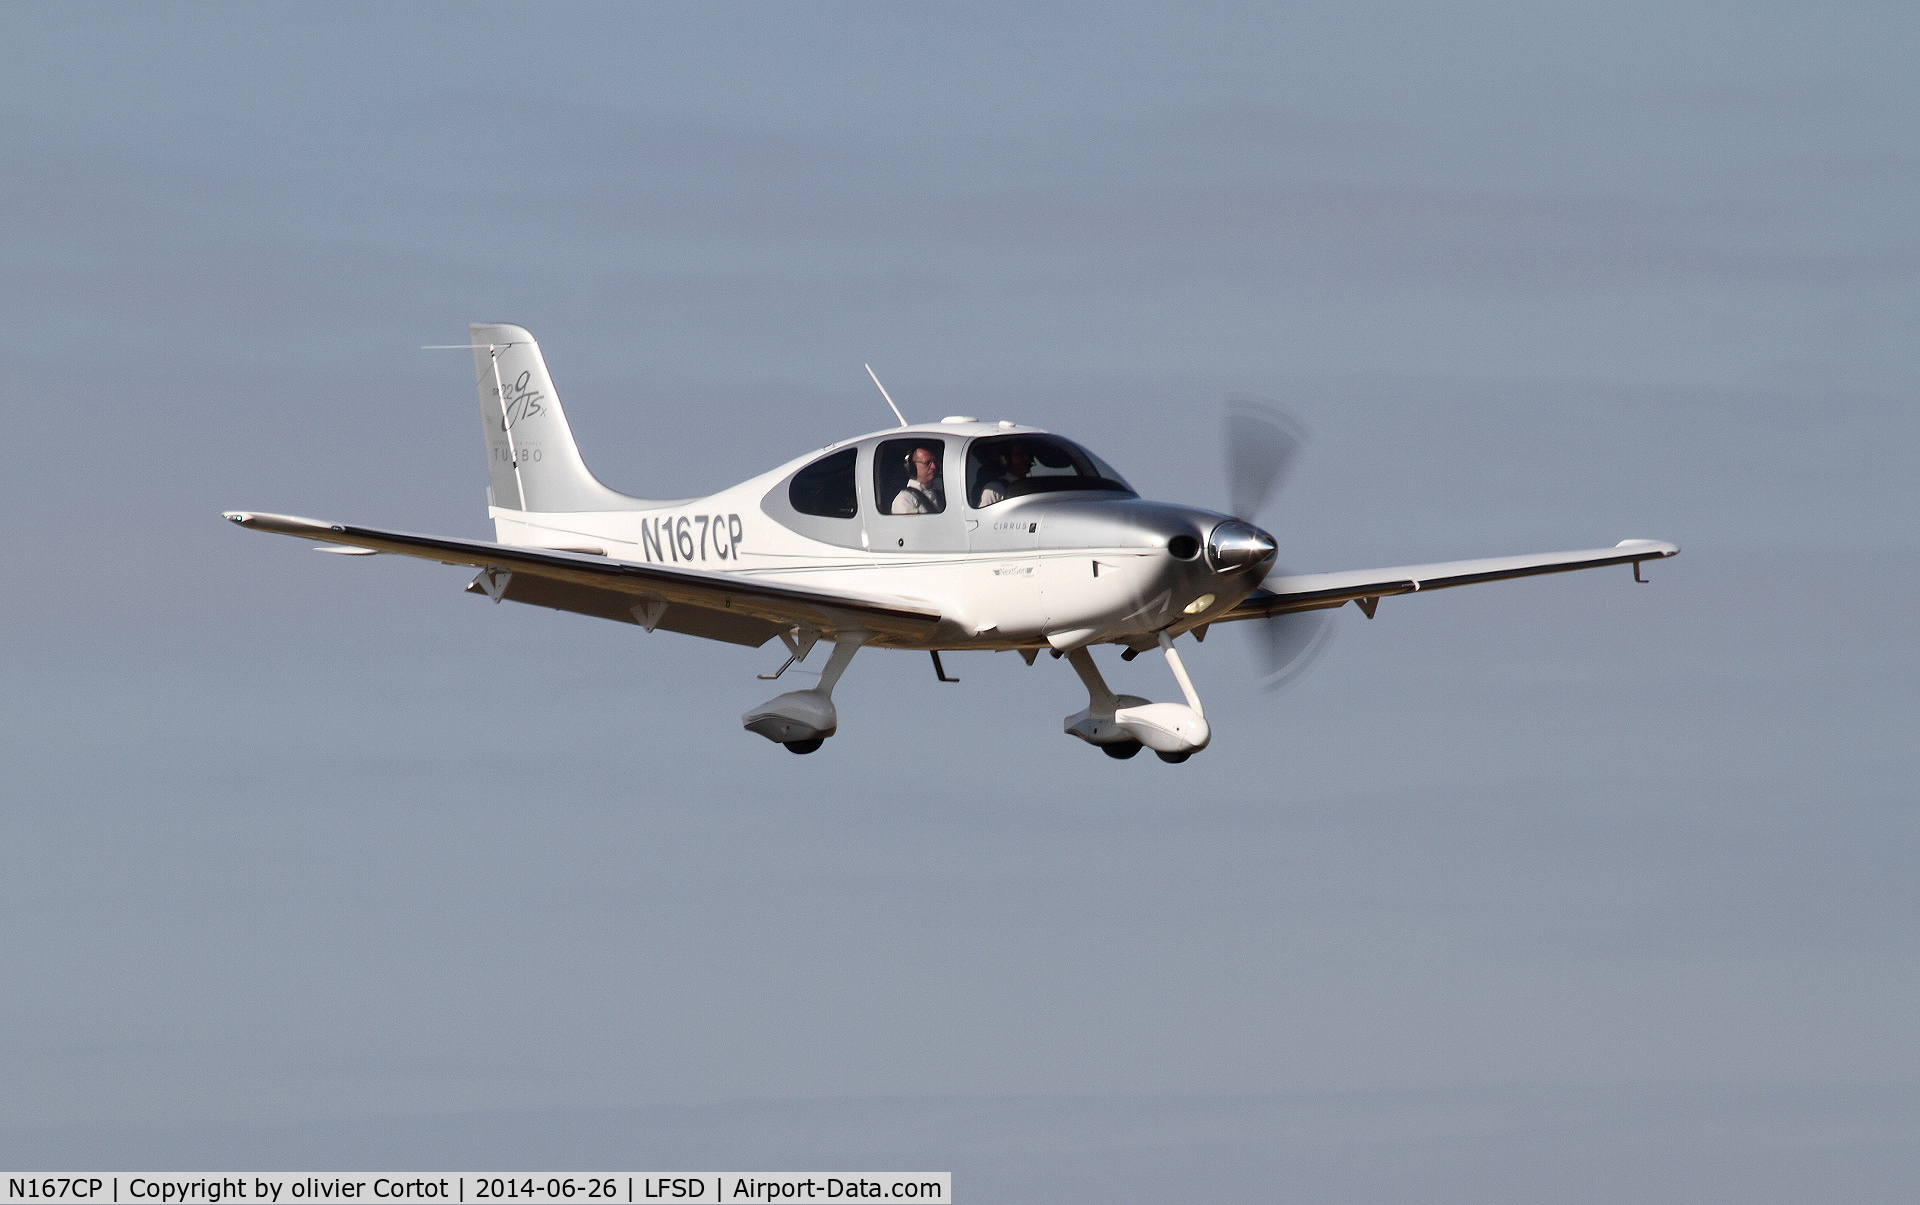 N167CP, 2008 Cirrus SR22 C/N 3075, landing at Dijon airport